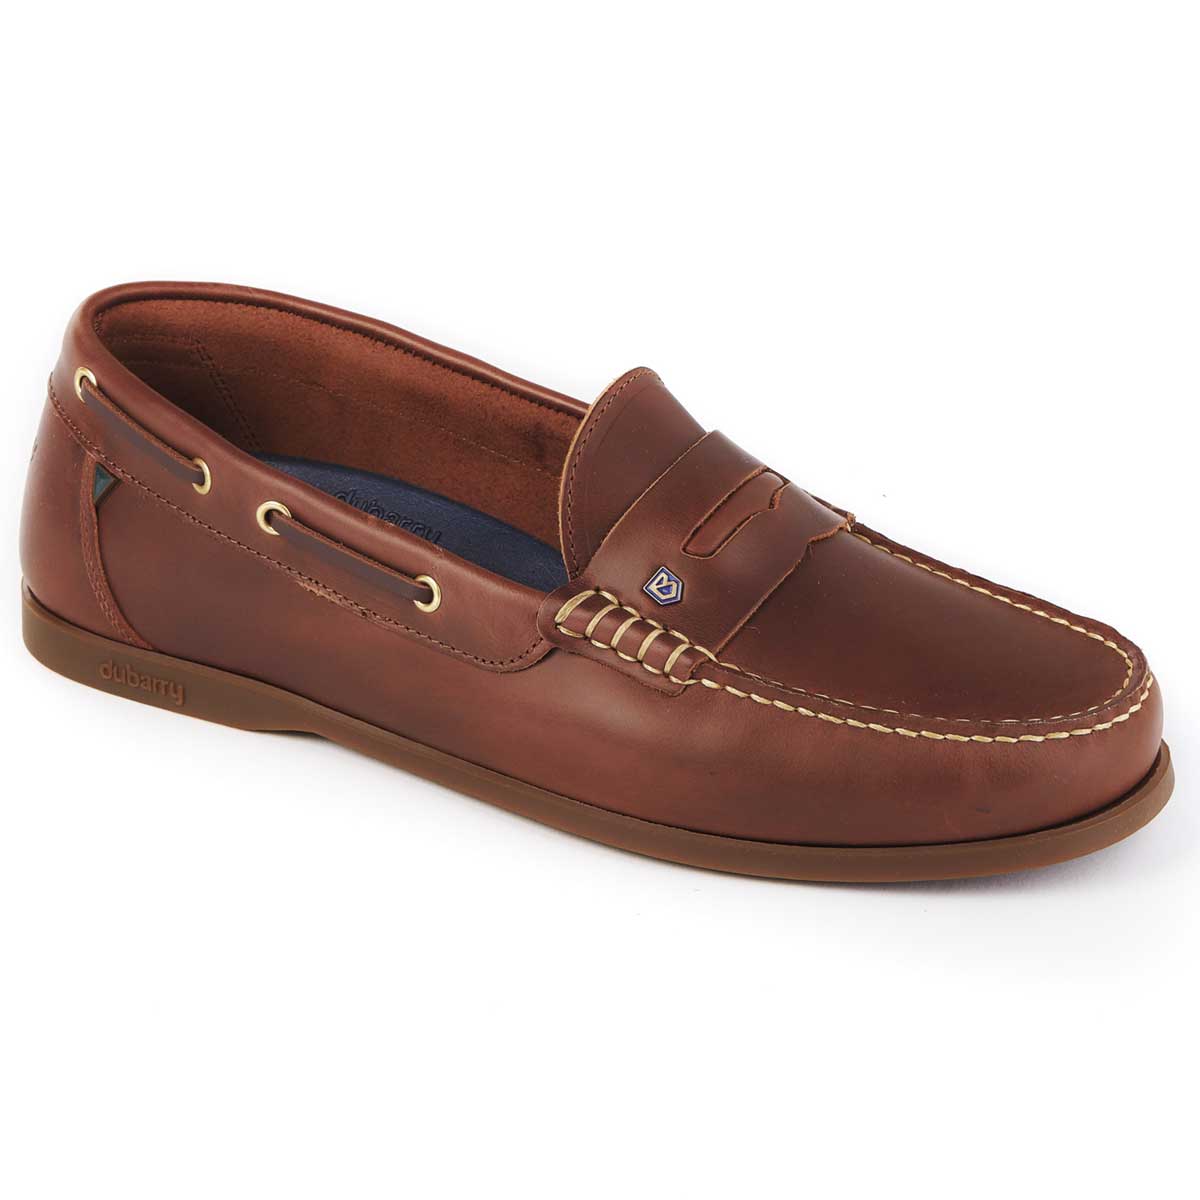 DUBARRY Men's Spinnaker Loafer Deck Shoes - Brown